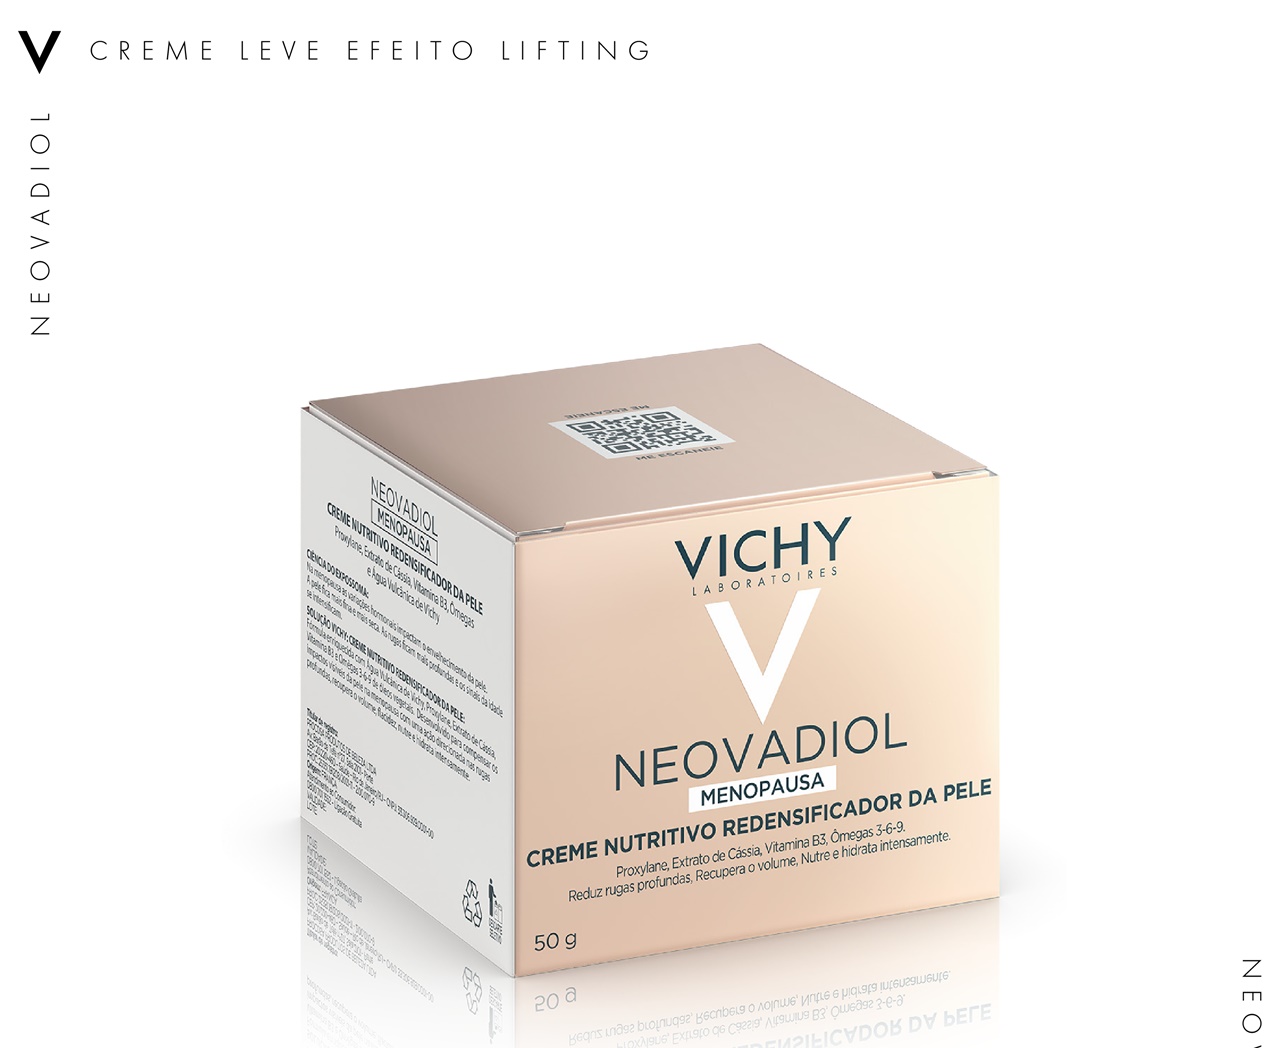 Creme Nutritivo Redensificador Vichy Neovadiol Menoupausa - 50g